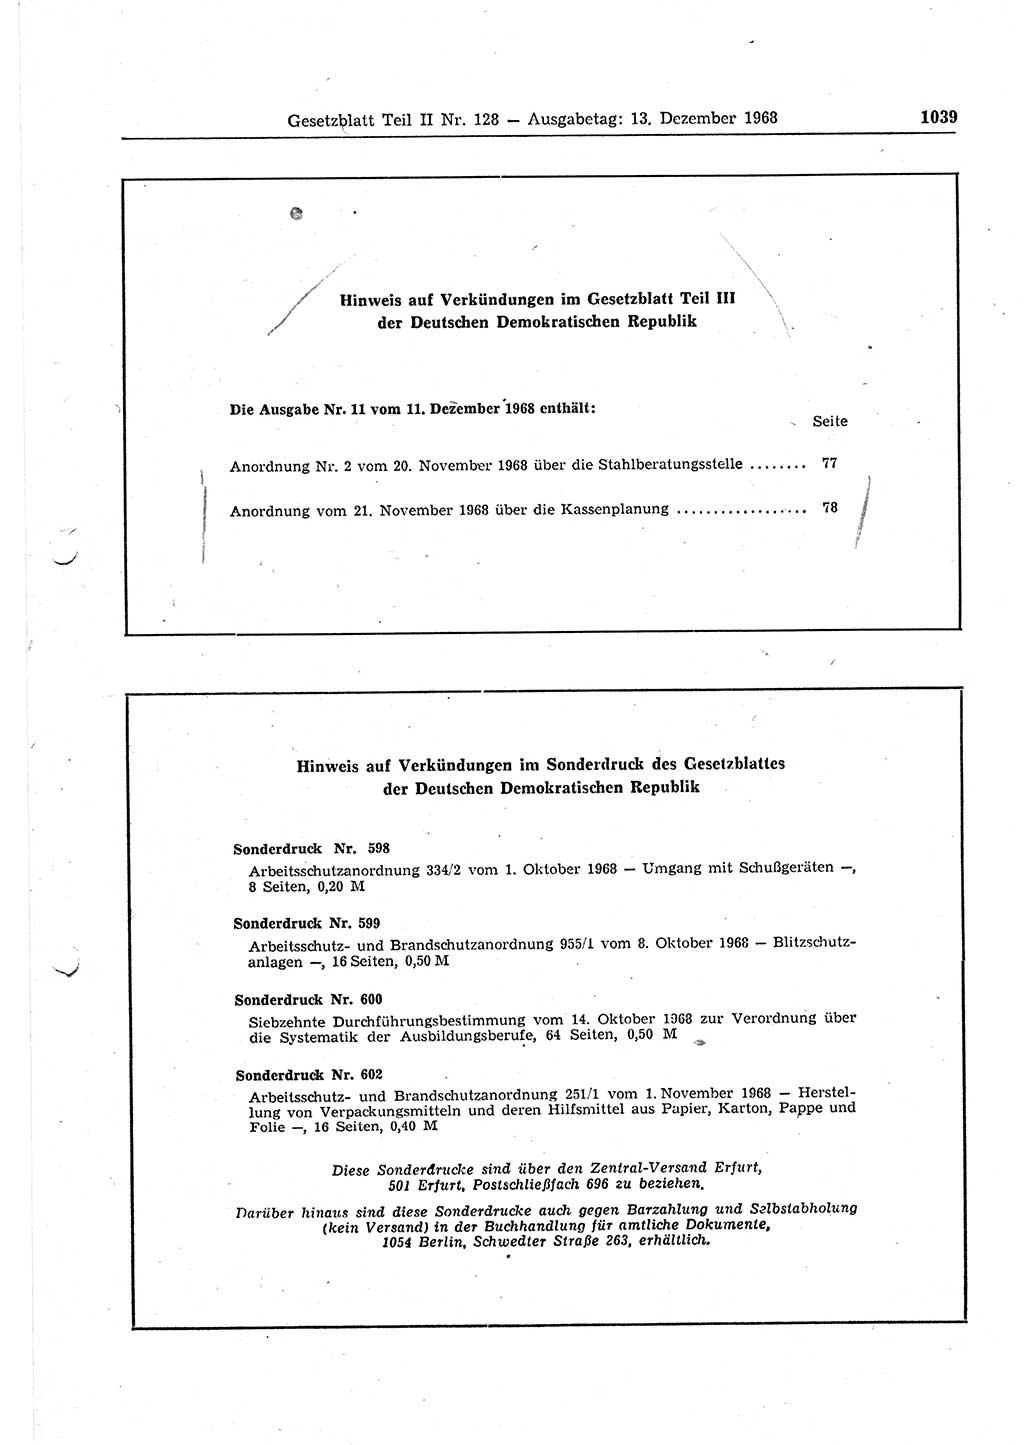 Gesetzblatt (GBl.) der Deutschen Demokratischen Republik (DDR) Teil ⅠⅠ 1968, Seite 1039 (GBl. DDR ⅠⅠ 1968, S. 1039)